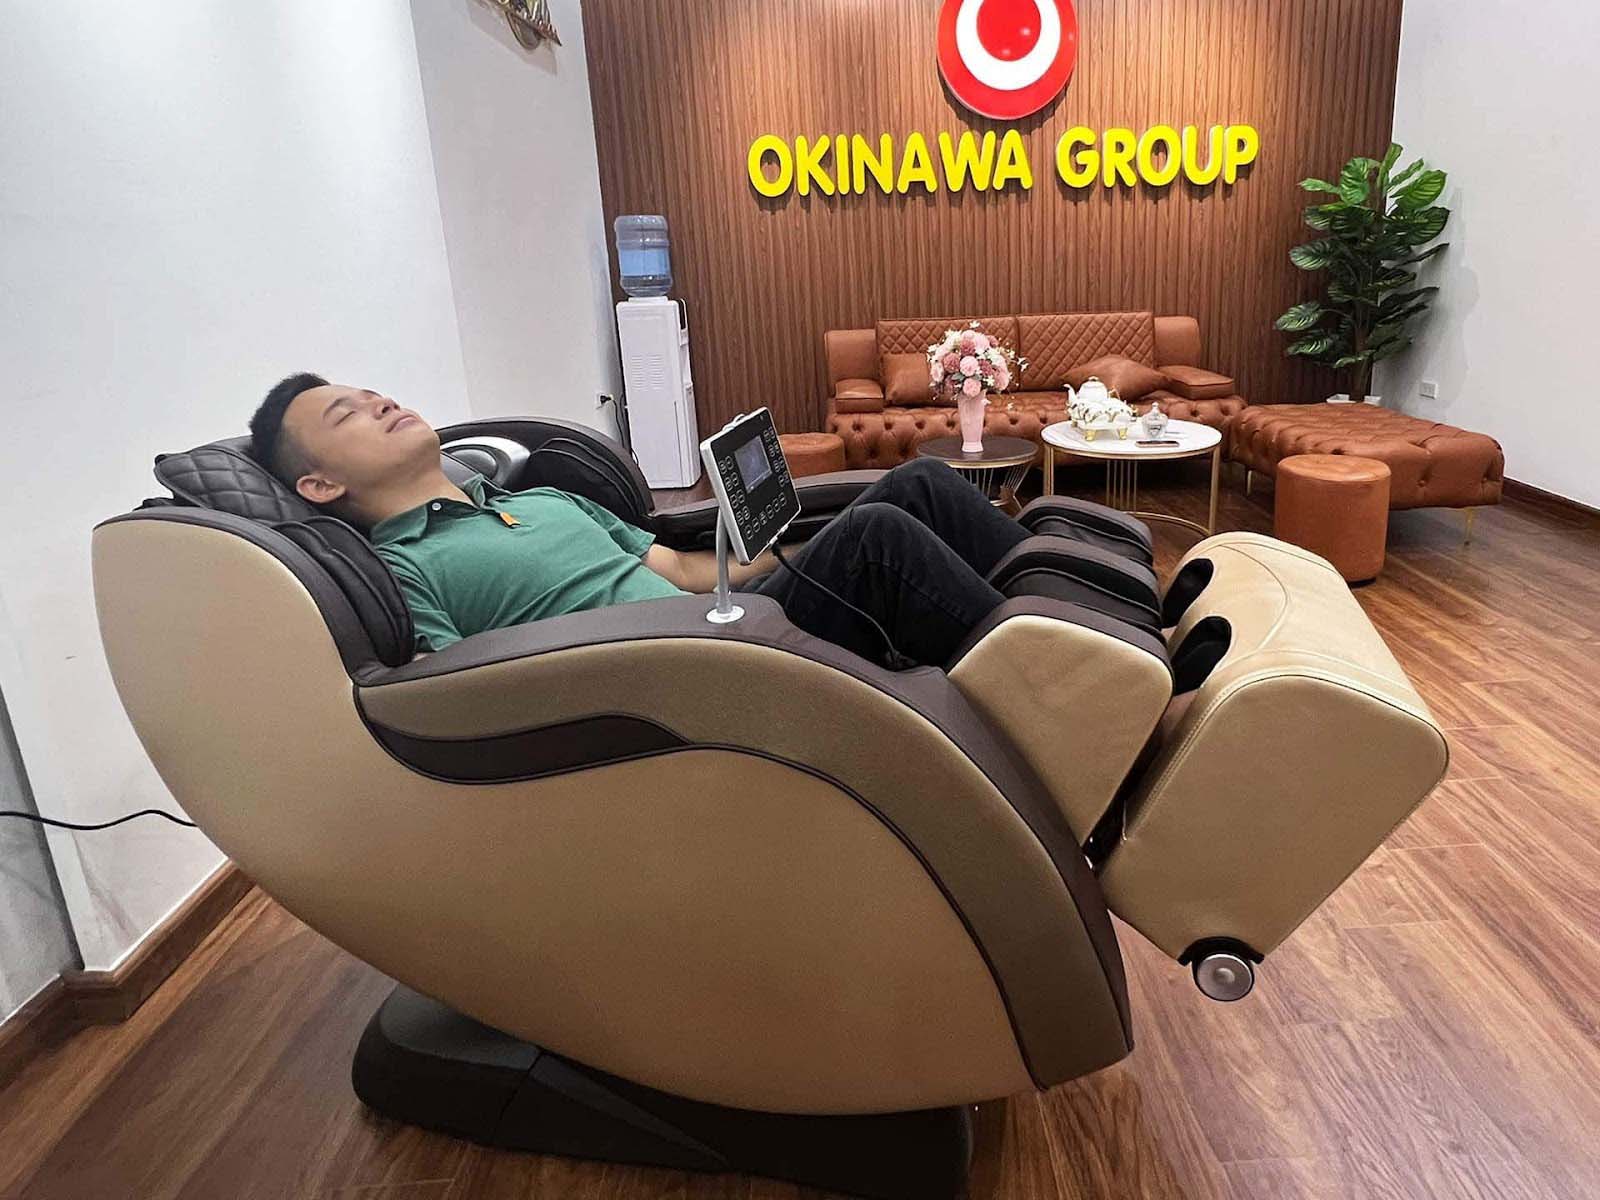 Chế độ công nghệ ghế massage OKINAWA OS 885